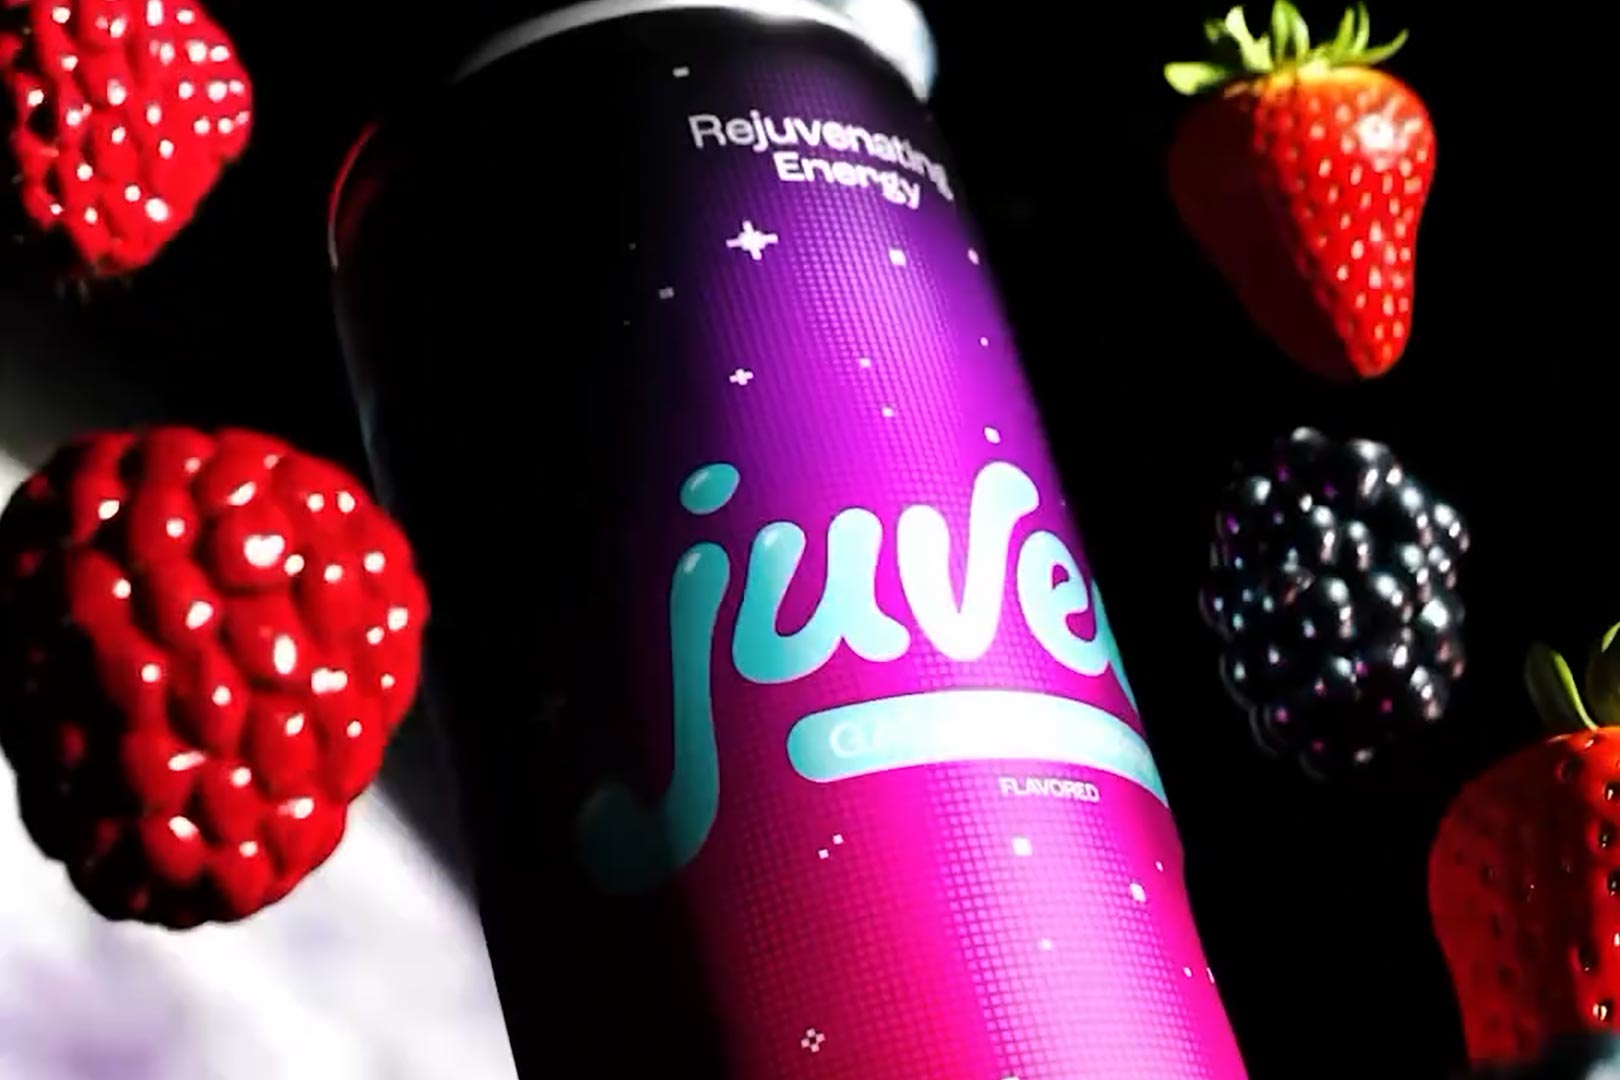 Galactic Berry Juvee Energy Drink